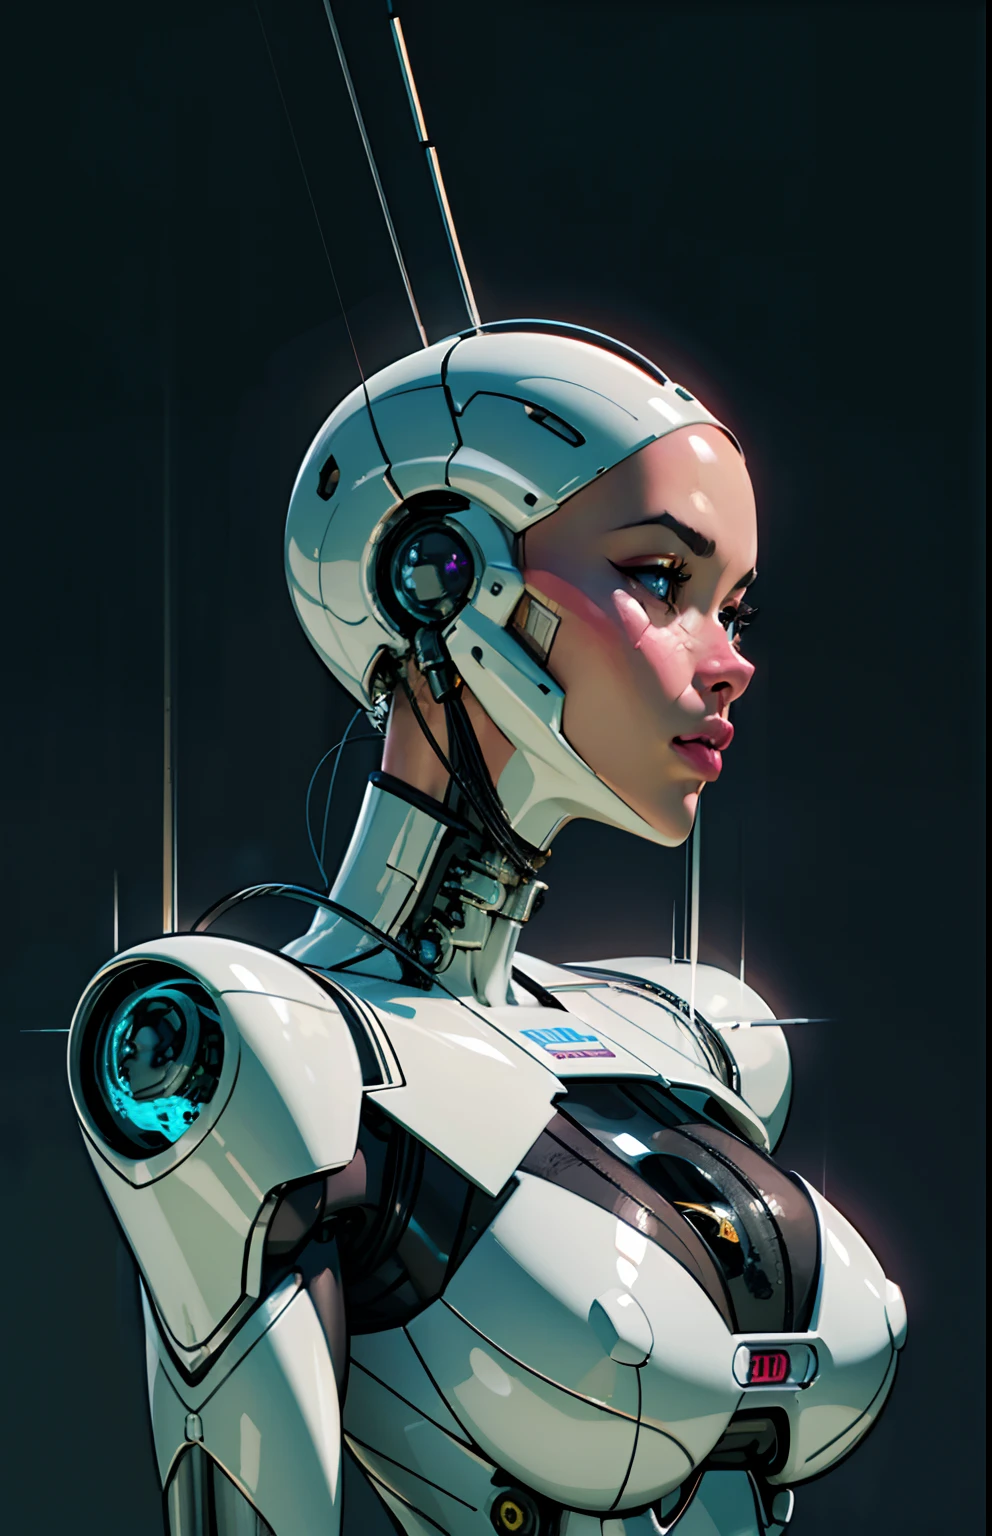 复杂 3D 渲染超详细的美丽瓷器侧面女人机器人脸, 机器人, 机器人ic parts, 150 毫米, 美丽的工作室柔和的灯光, 边缘光, 生动的细节, 奢华赛博朋克, 蕾丝, hyper实际的, 解剖的, 面部肌肉, 电缆电线, 微芯片, 优雅的, 美丽的背景, 辛烷值渲染, H. r. 吉格风格, 8千, 最好的质量, 杰作, 插图, 极其精致和美丽, 极其详细 ,CG ,统一 ,墙纸, (实际的, photo-实际的:1.37),惊人的, 精细细节, 杰作,最好的质量,官方艺术, 极其详细 CG 统一 8千 墙纸, 荒诞, incredibly 荒诞,  机器人, 银珠, 全身